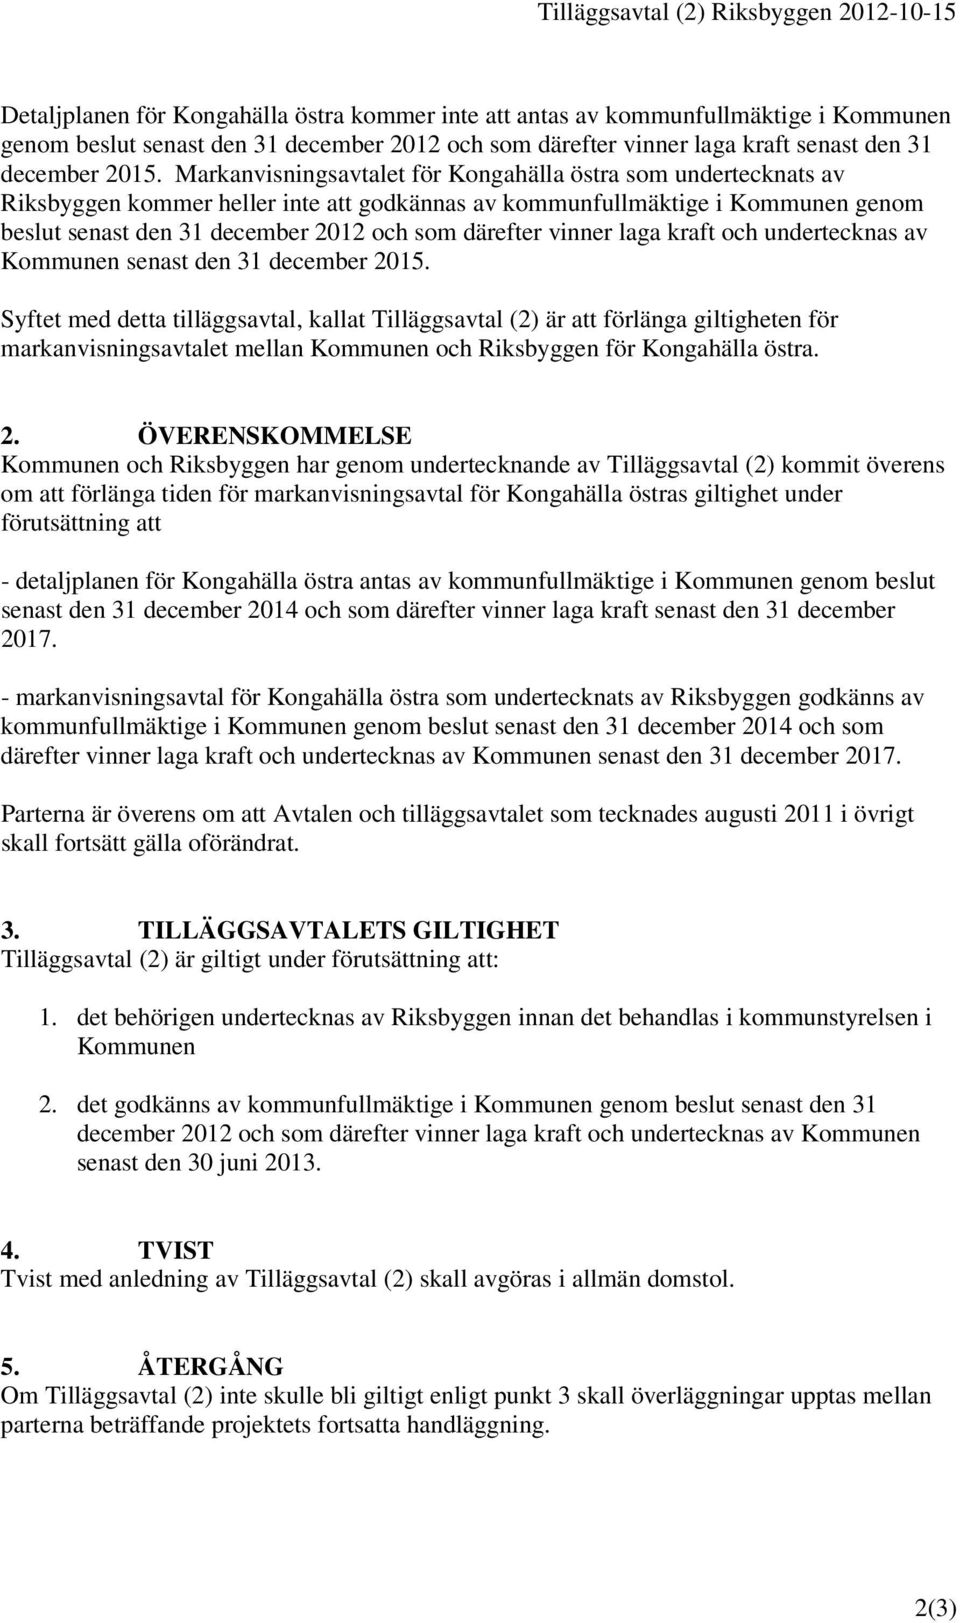 Markanvisningsavtalet för Kongahälla östra som undertecknats av Riksbyggen kommer heller inte att godkännas av kommunfullmäktige i Kommunen genom beslut senast den 31 december 2012 och som därefter